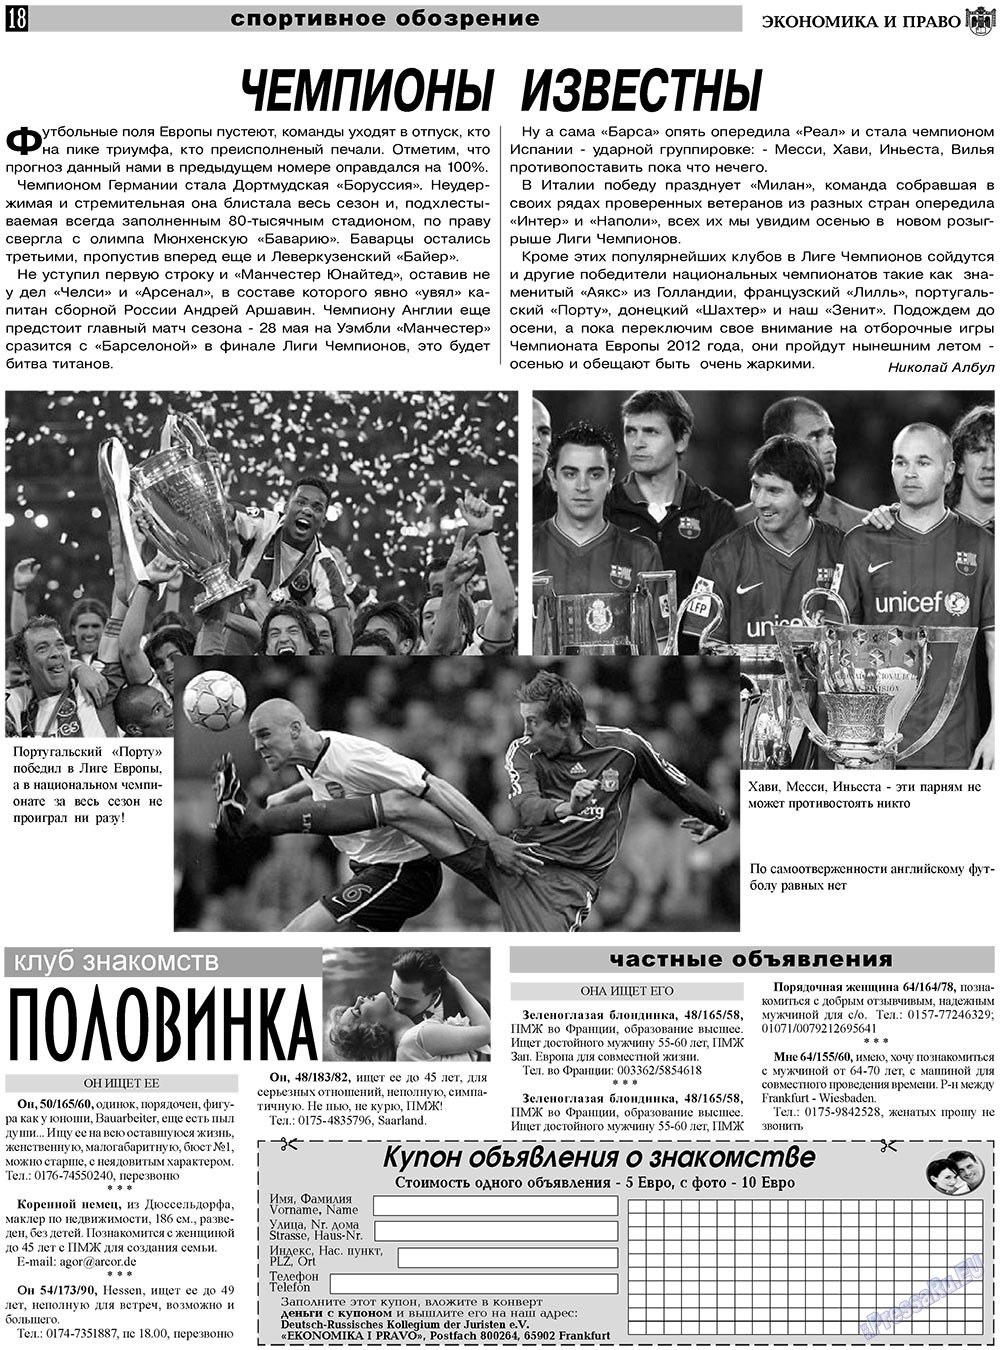 Экономика и право, газета. 2011 №6 стр.18